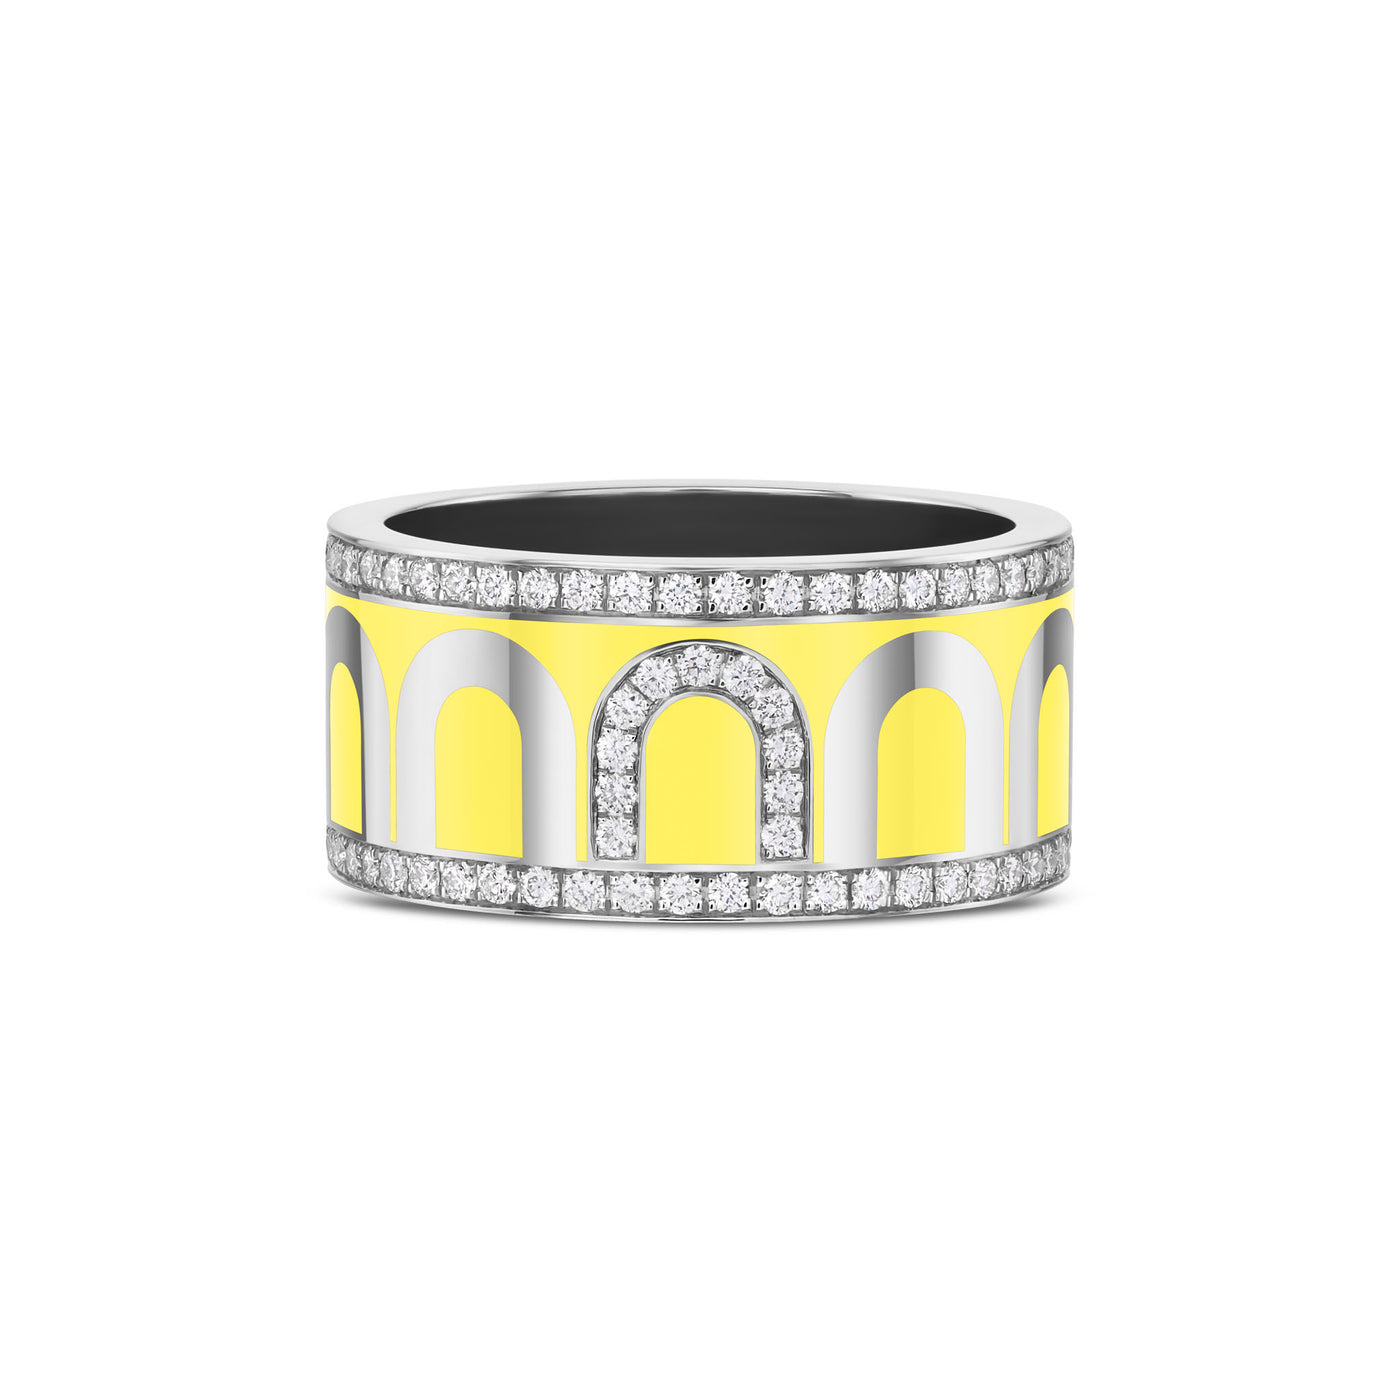 L'Arc de DAVIDOR Ring GM, 18k White Gold with Limoncello Lacquered Ceramic and Porta Diamonds - DAVIDOR